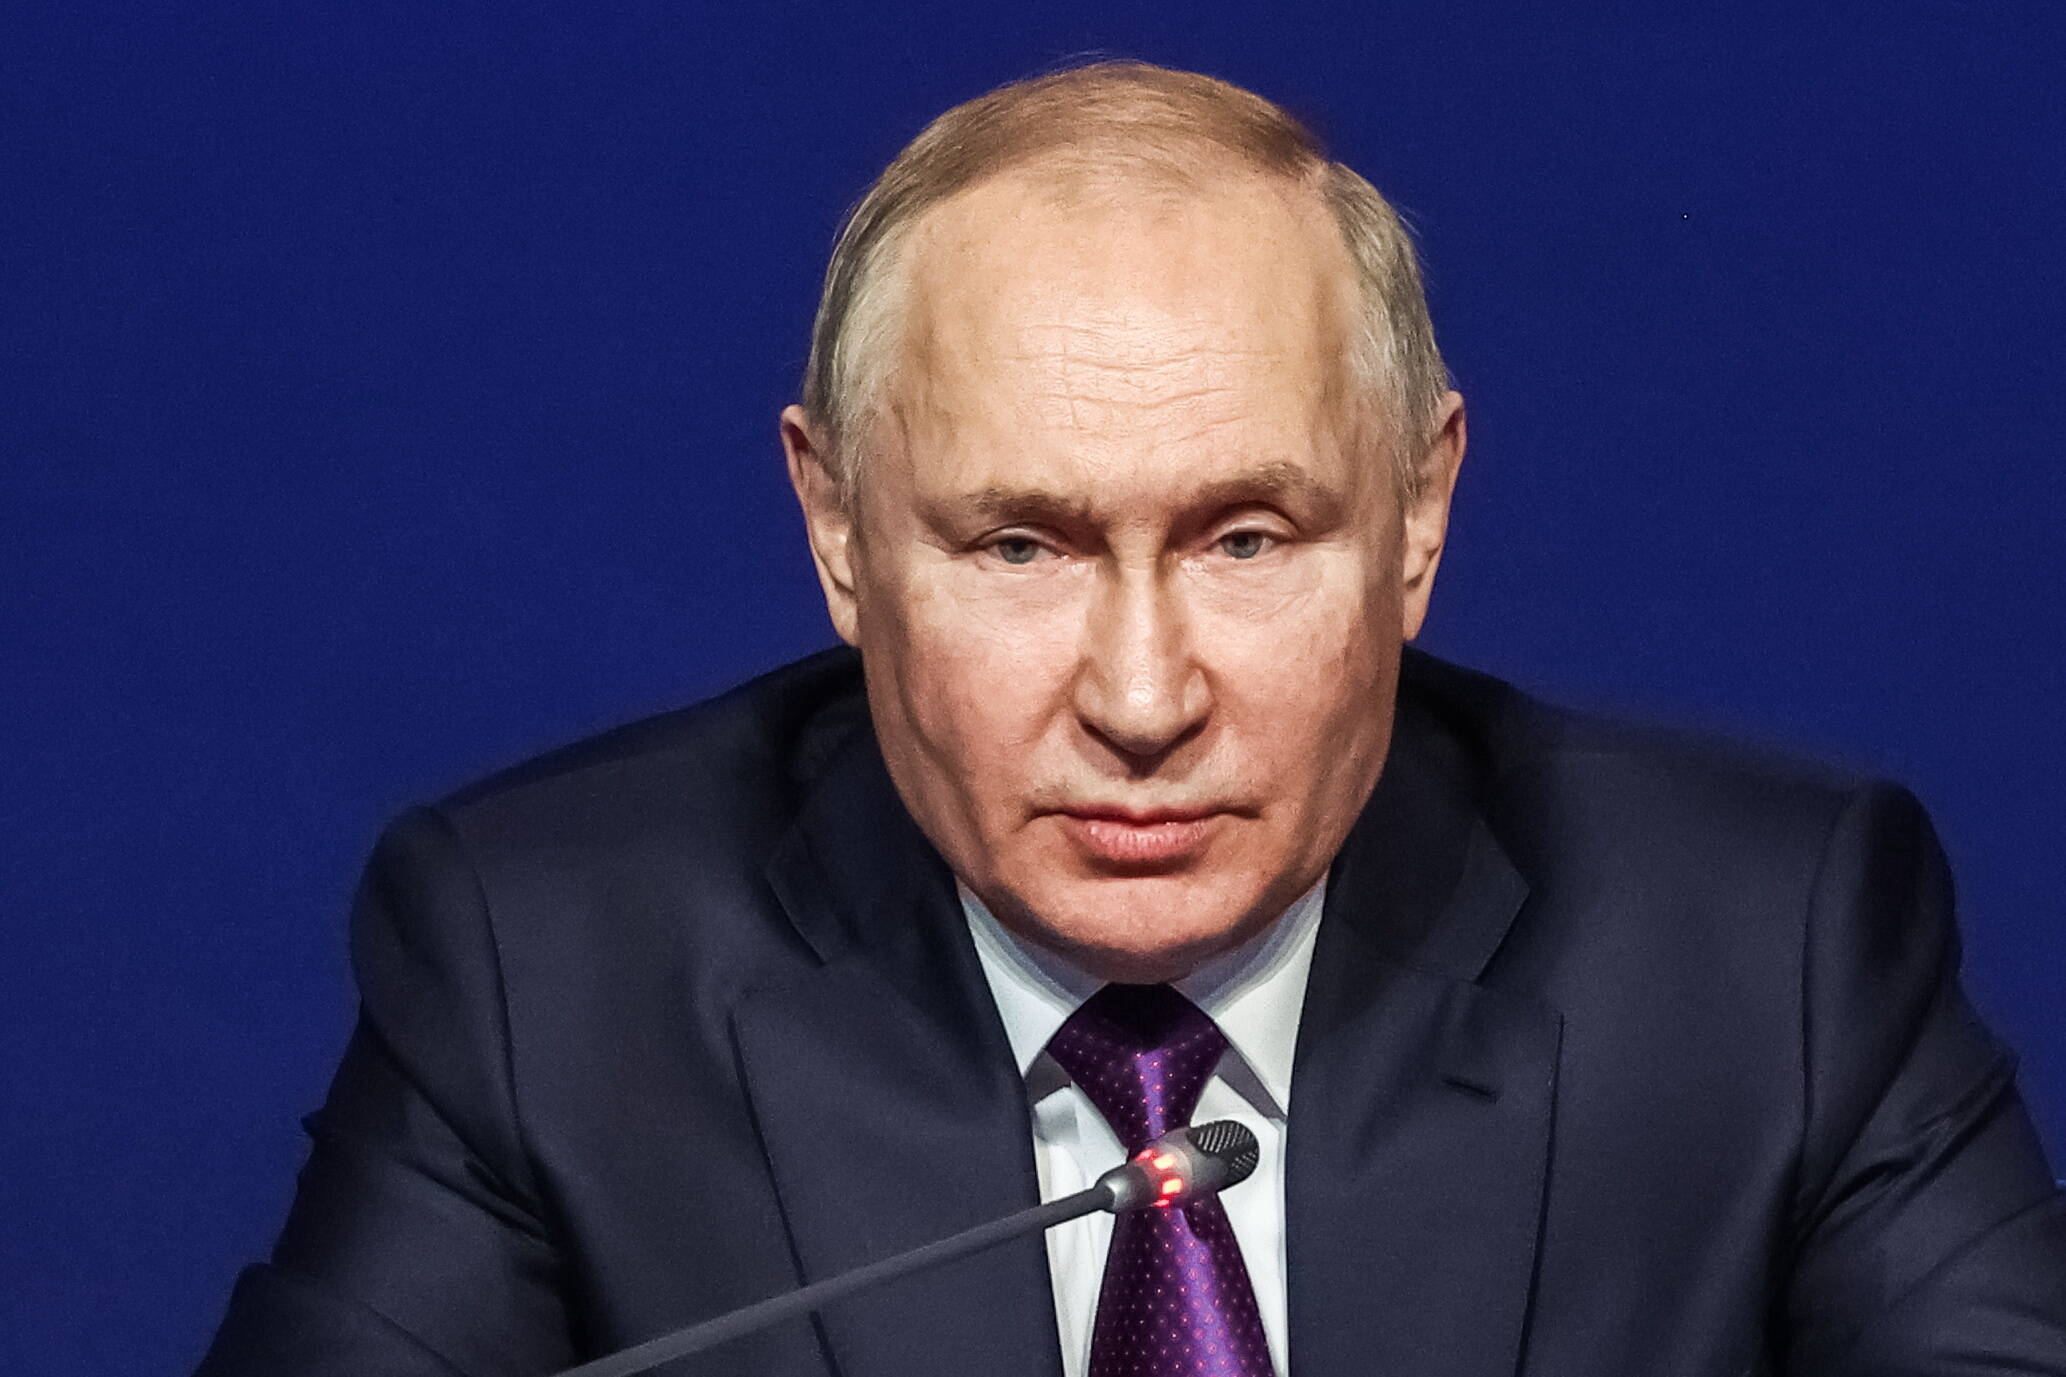 Atomschlag ☢️ bei Waffenlieferungen? Chef der russischen Duma warnt den Westen vor "Globaler Katastrophe"!